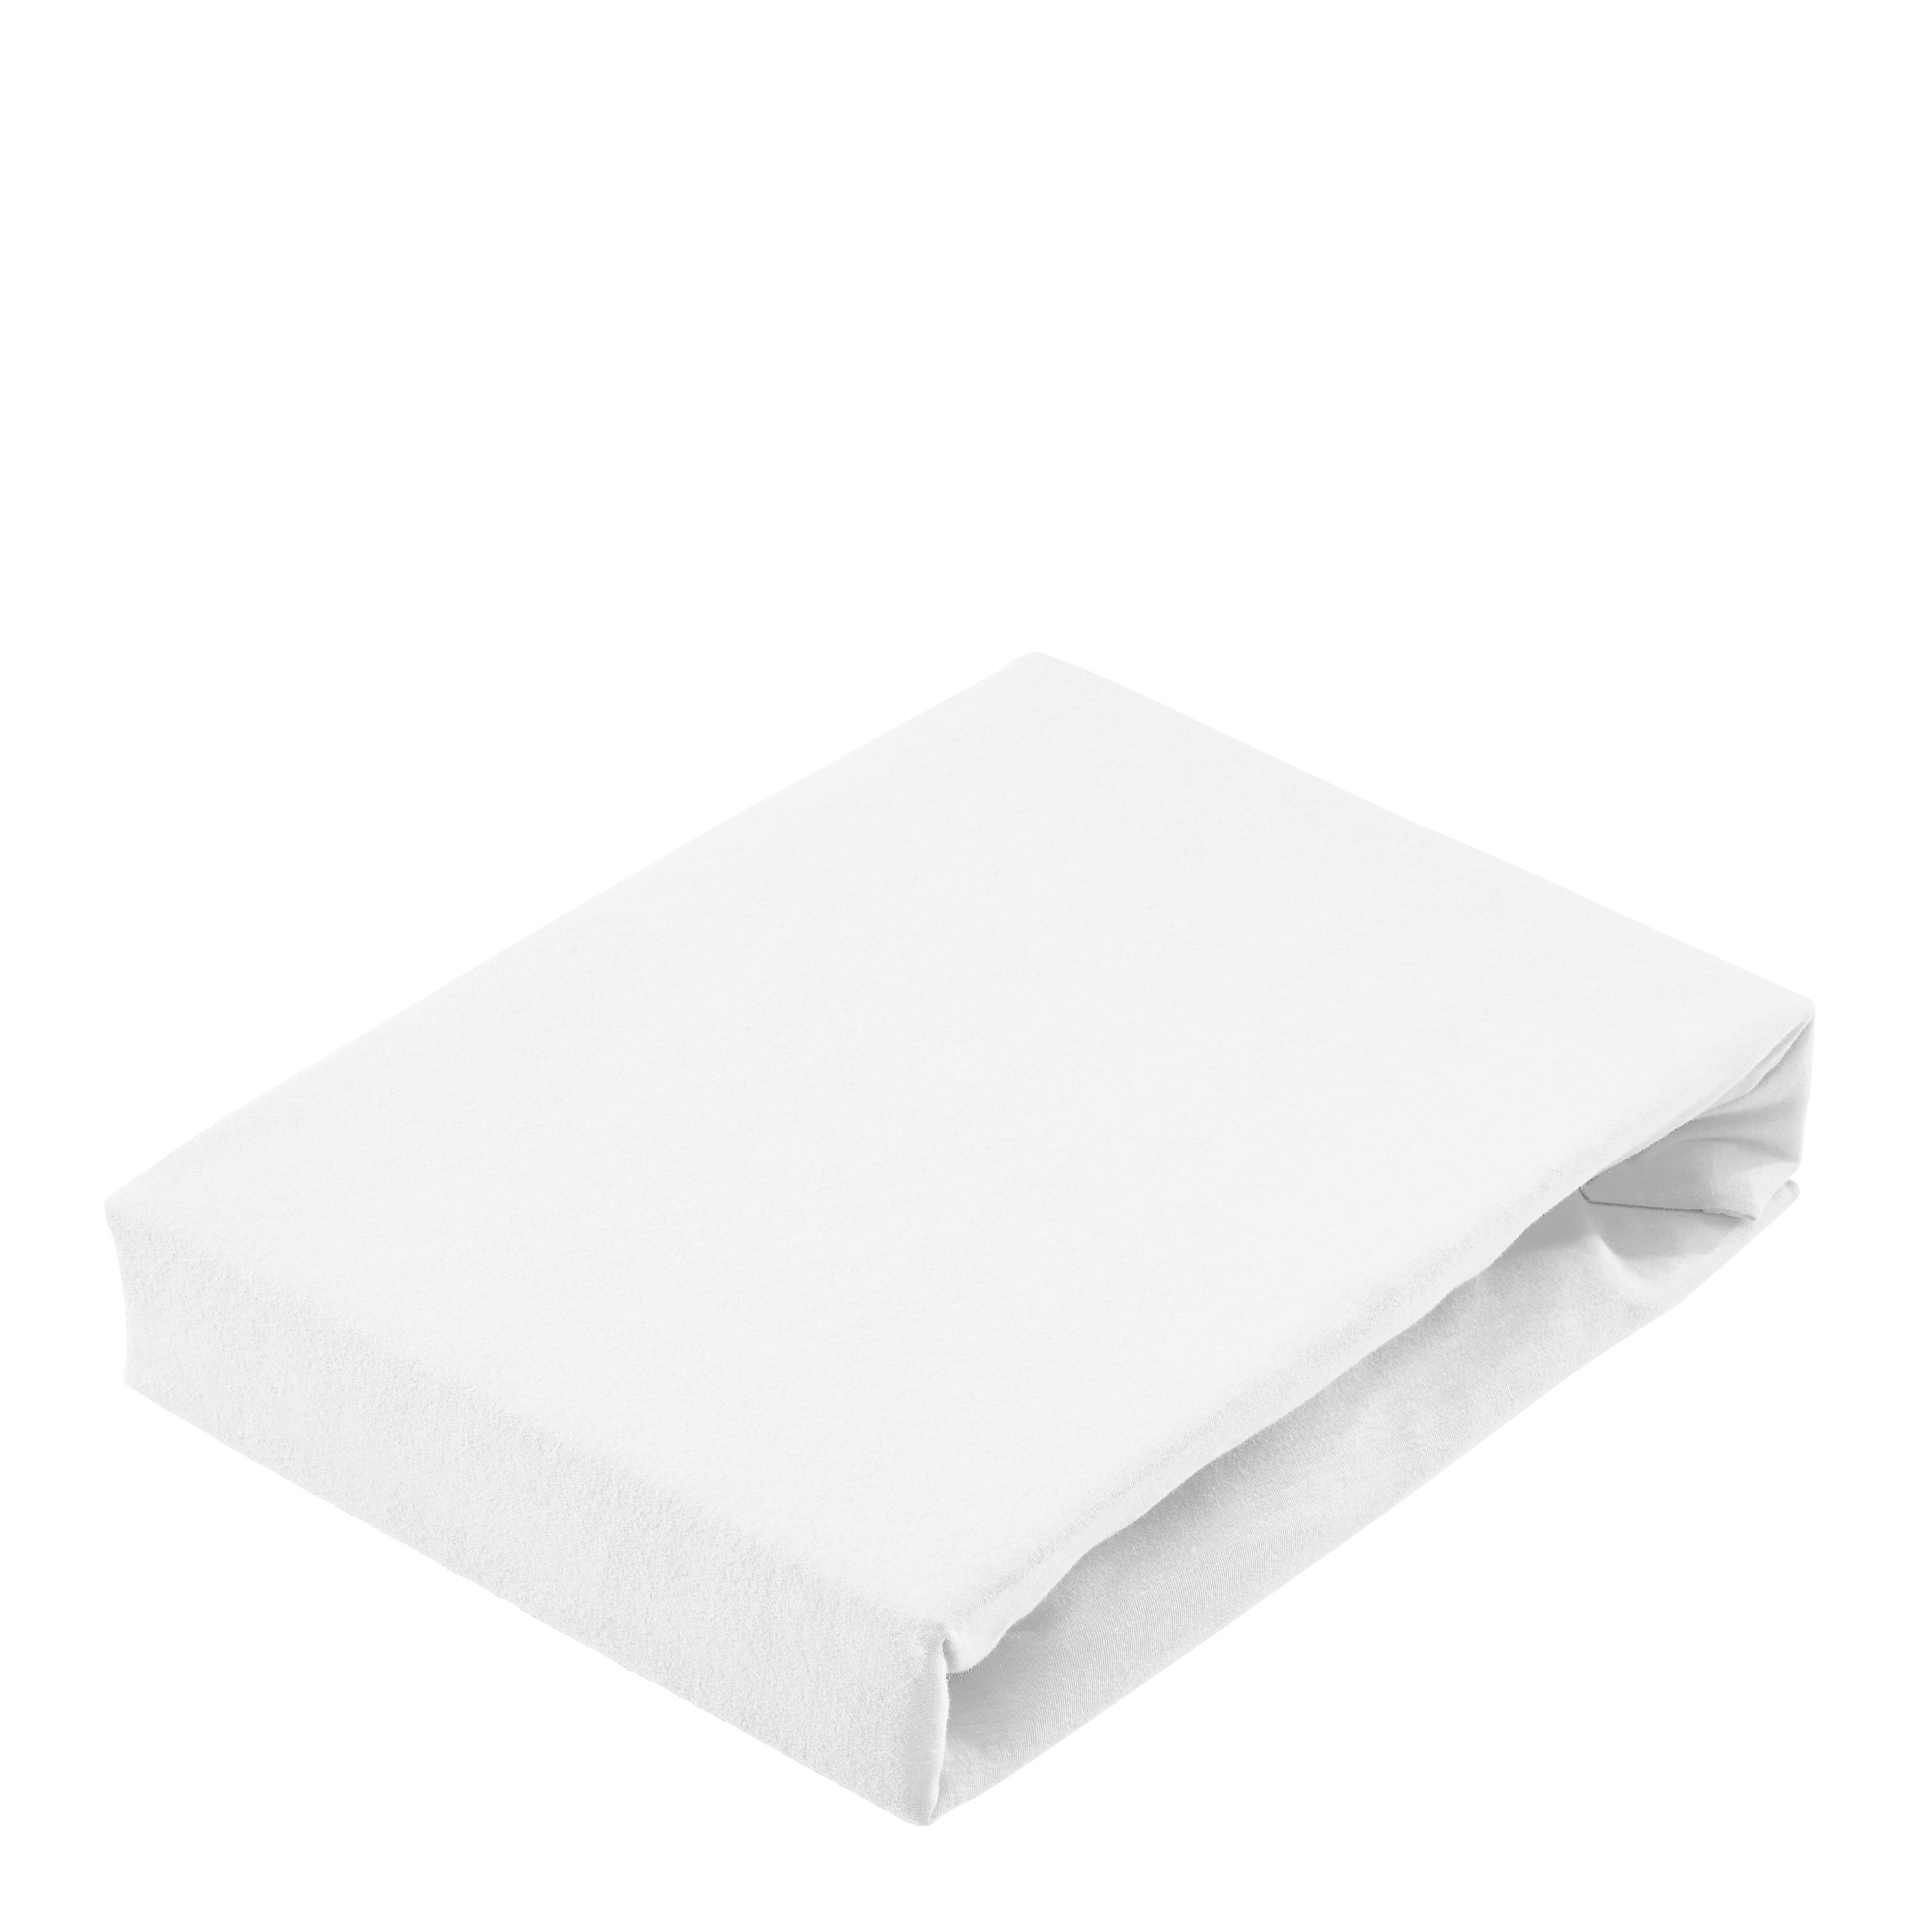 SPANNBETTTUCH Jersey  - Weiß, Basics, Textil (150/200cm) - Bio:Vio